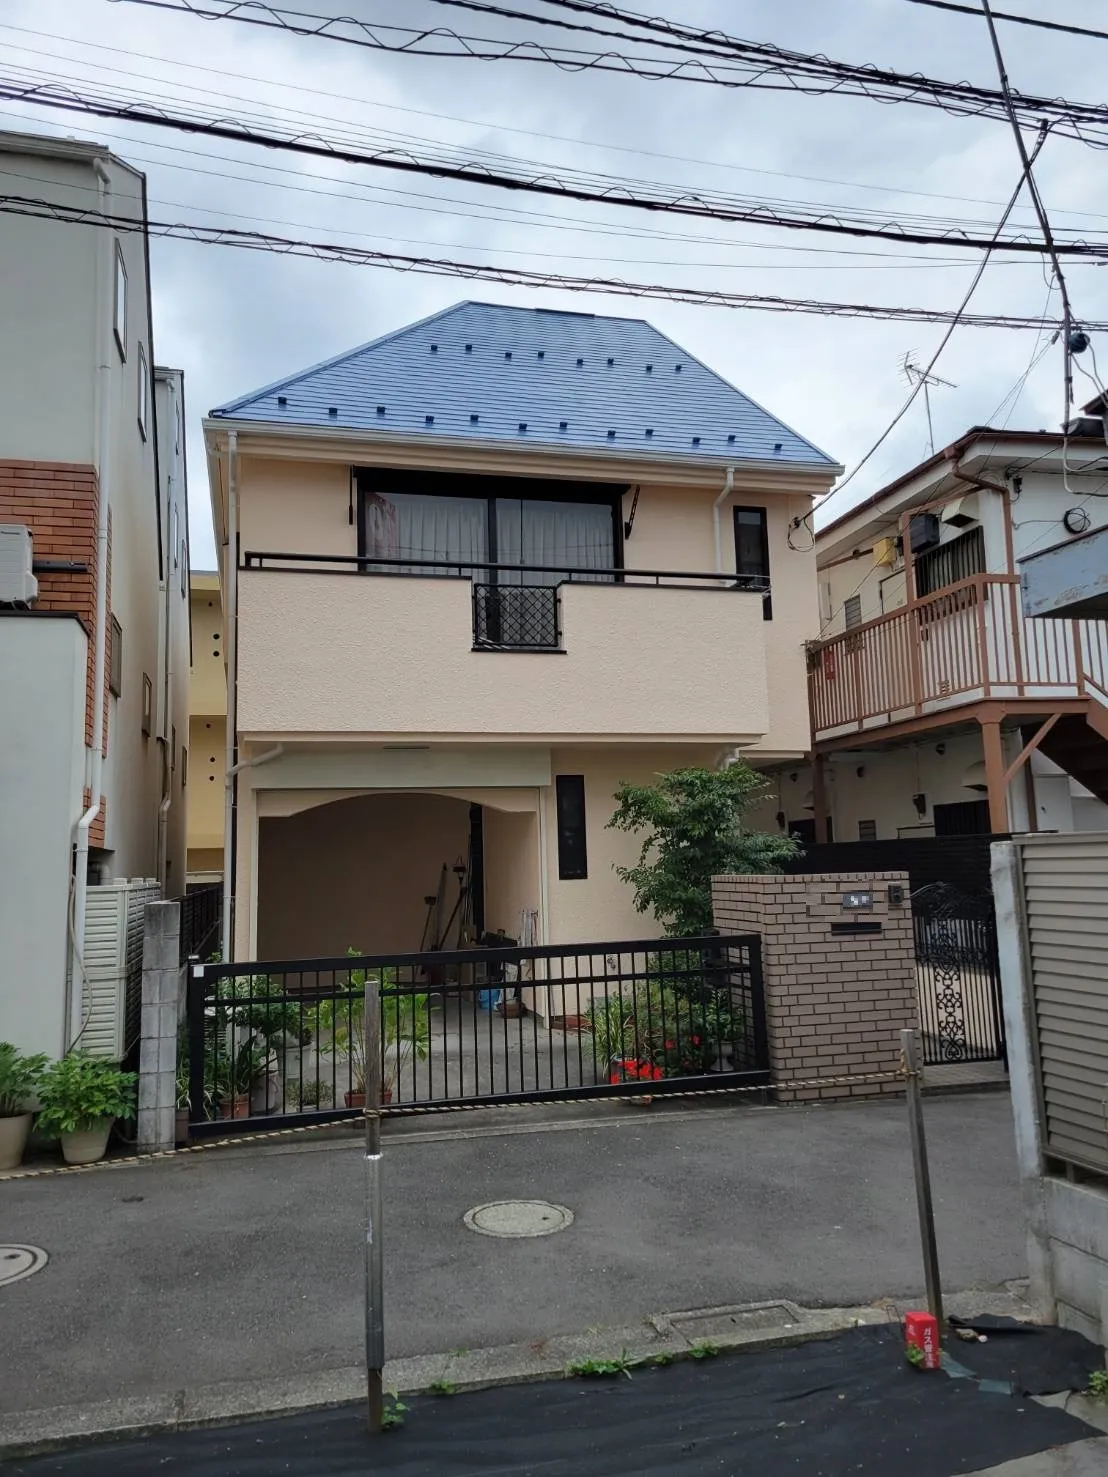 東京都世田谷区のU様邸にて施工させて頂いていた外壁塗装および屋根塗装工事が完成致しました